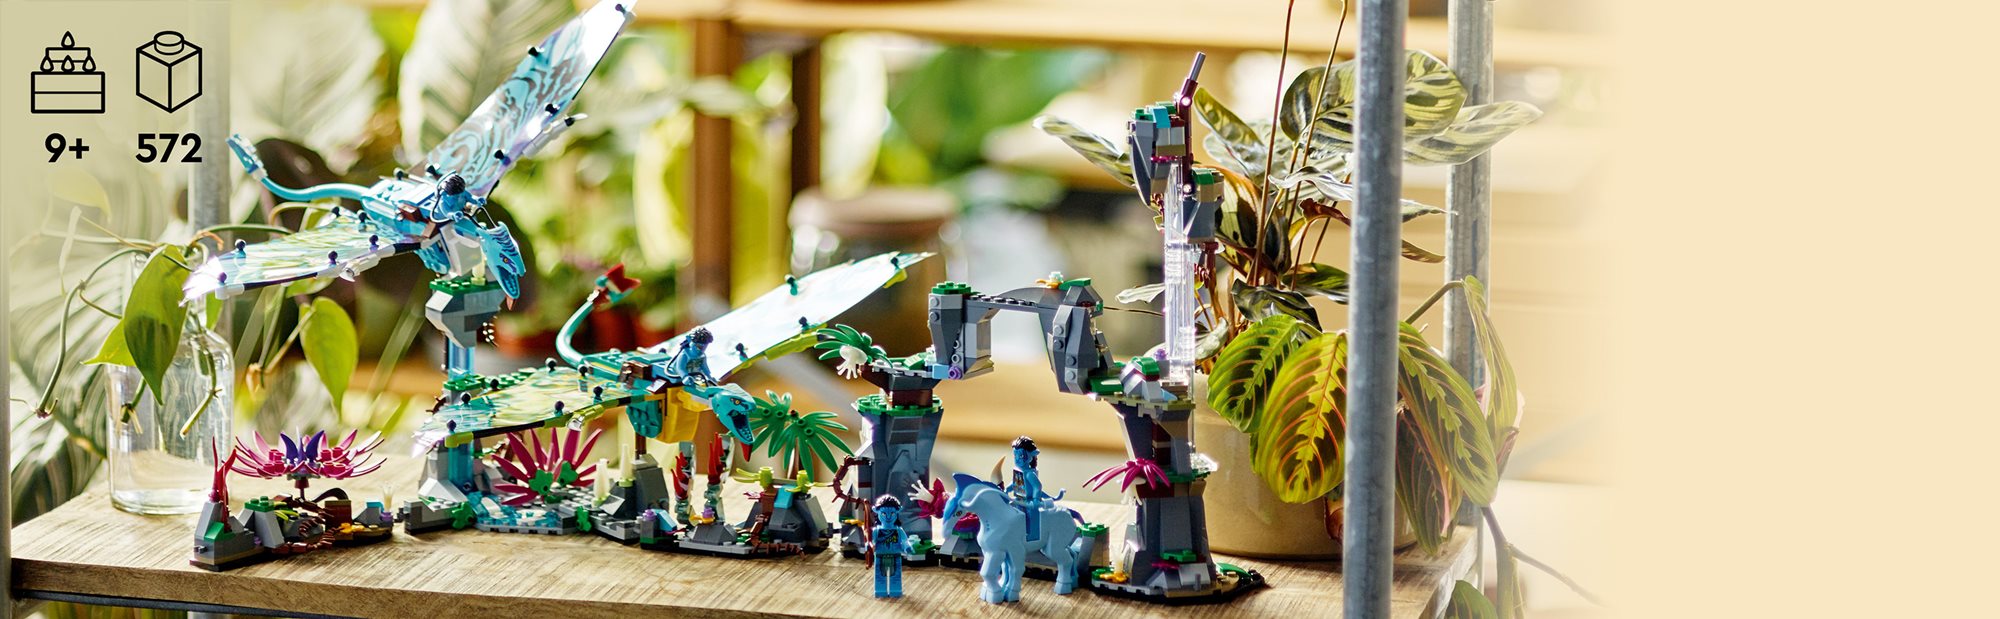 Buy LEGO Avatar Jake & Neytiri's First Banshee Flight Set 75572